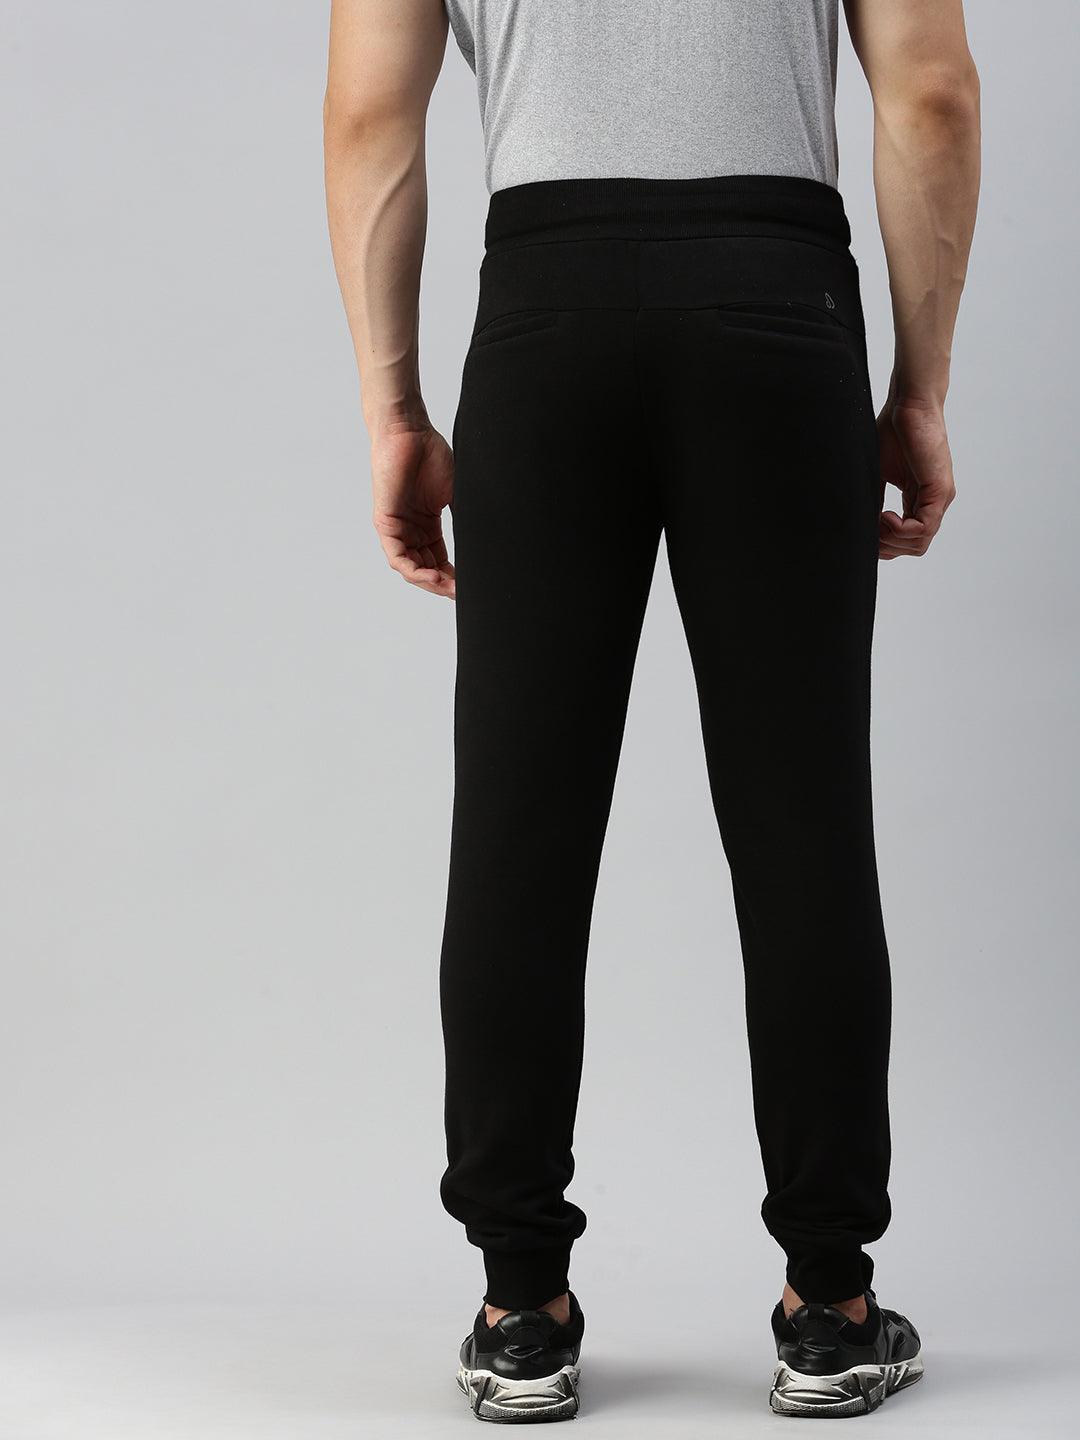 Sporto Printed Men Black Track Pants - Buy Sporto Printed Men Black Track  Pants Online at Best Prices in India | Flipkart.com